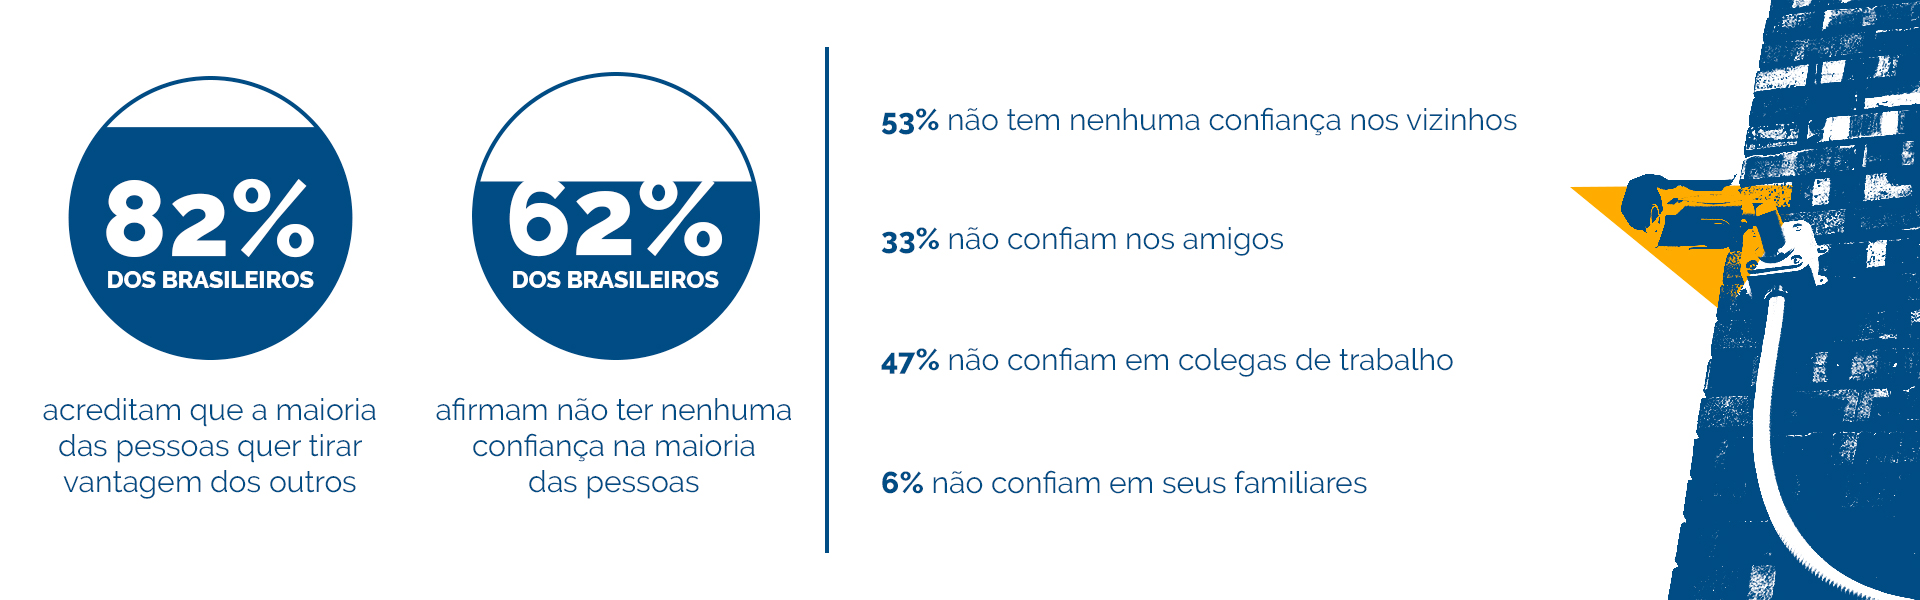 Infográfico jeitinho brasileiro pesquisa CNI.